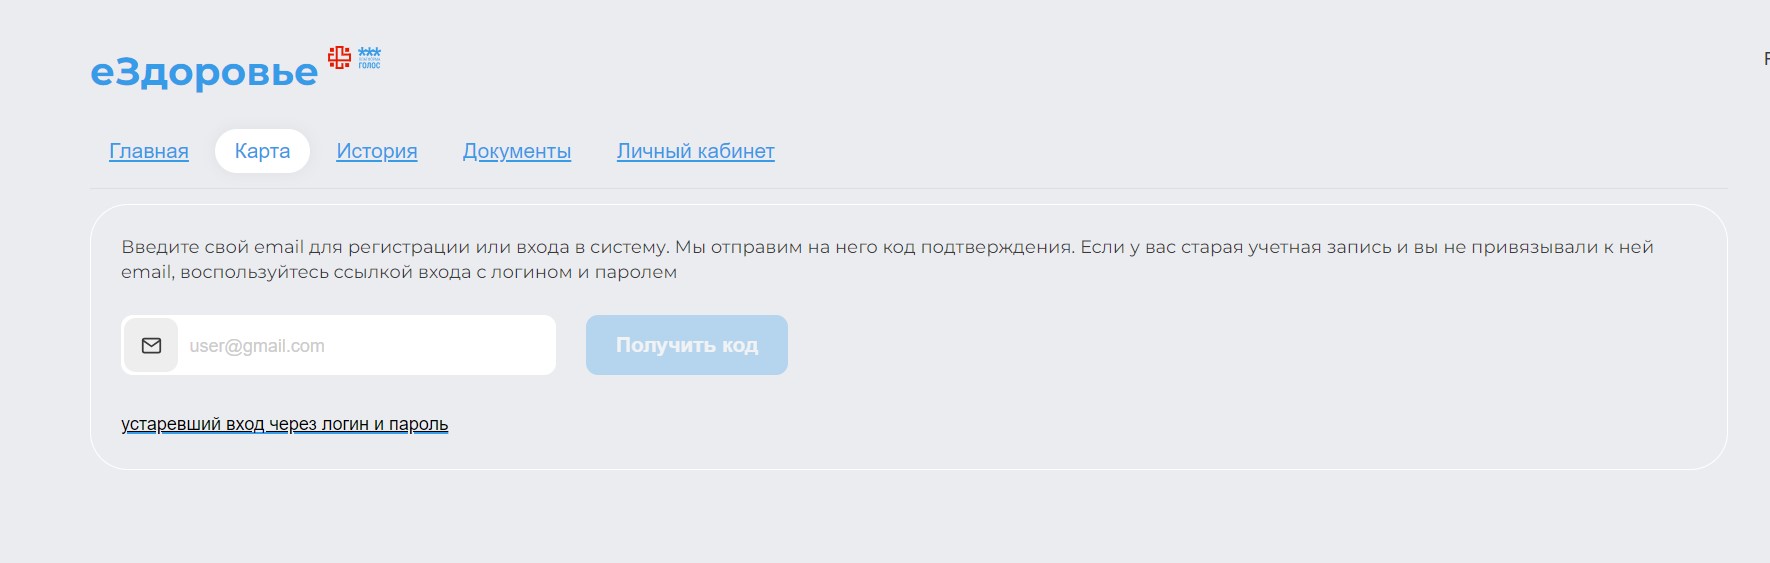 Скриншот платформы еЗдоровье - это белорусская платформа телемедицины